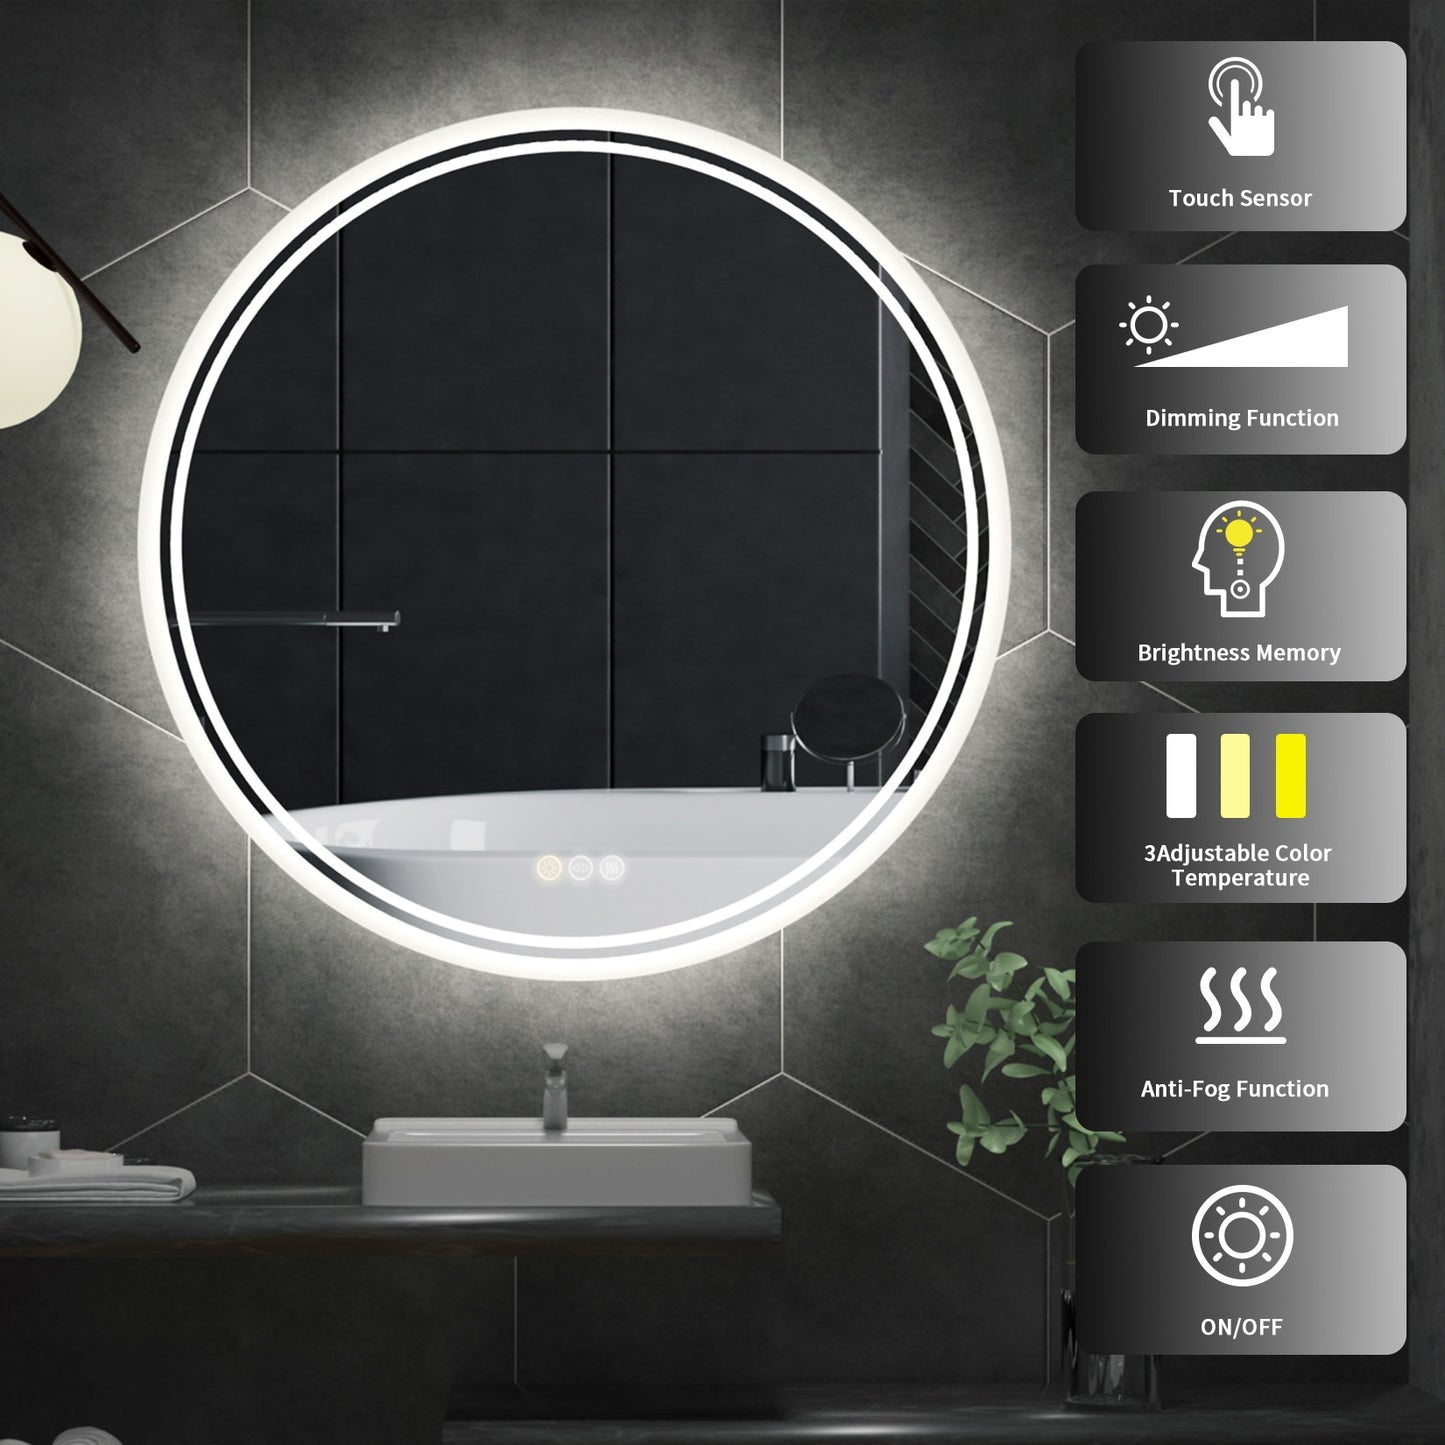 Circular LED Bathroom Mirror with Anti-Fog